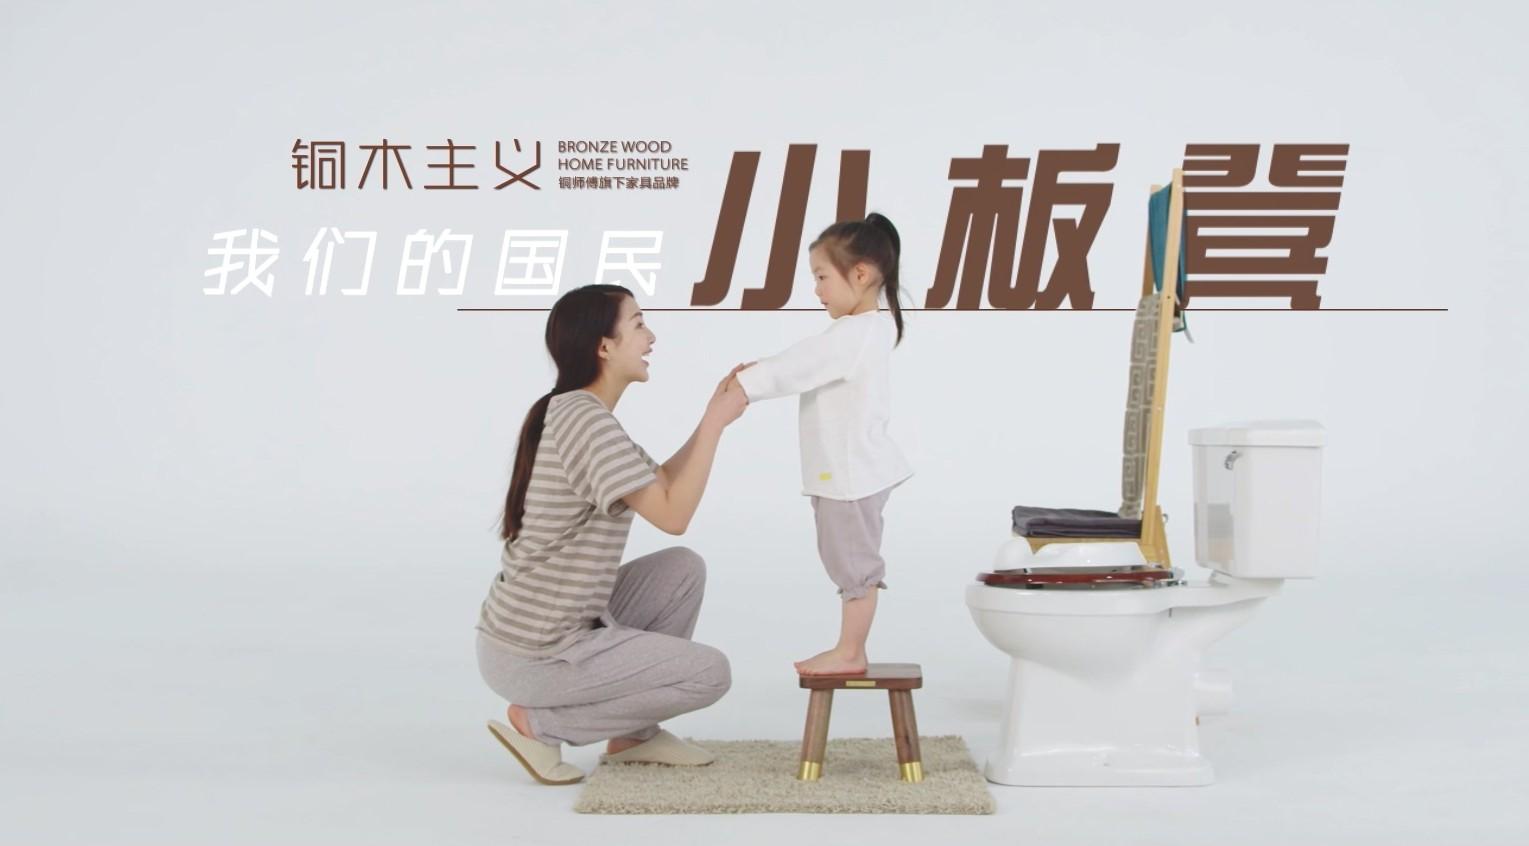 产品视频广告：铜木主义《国民小板凳》